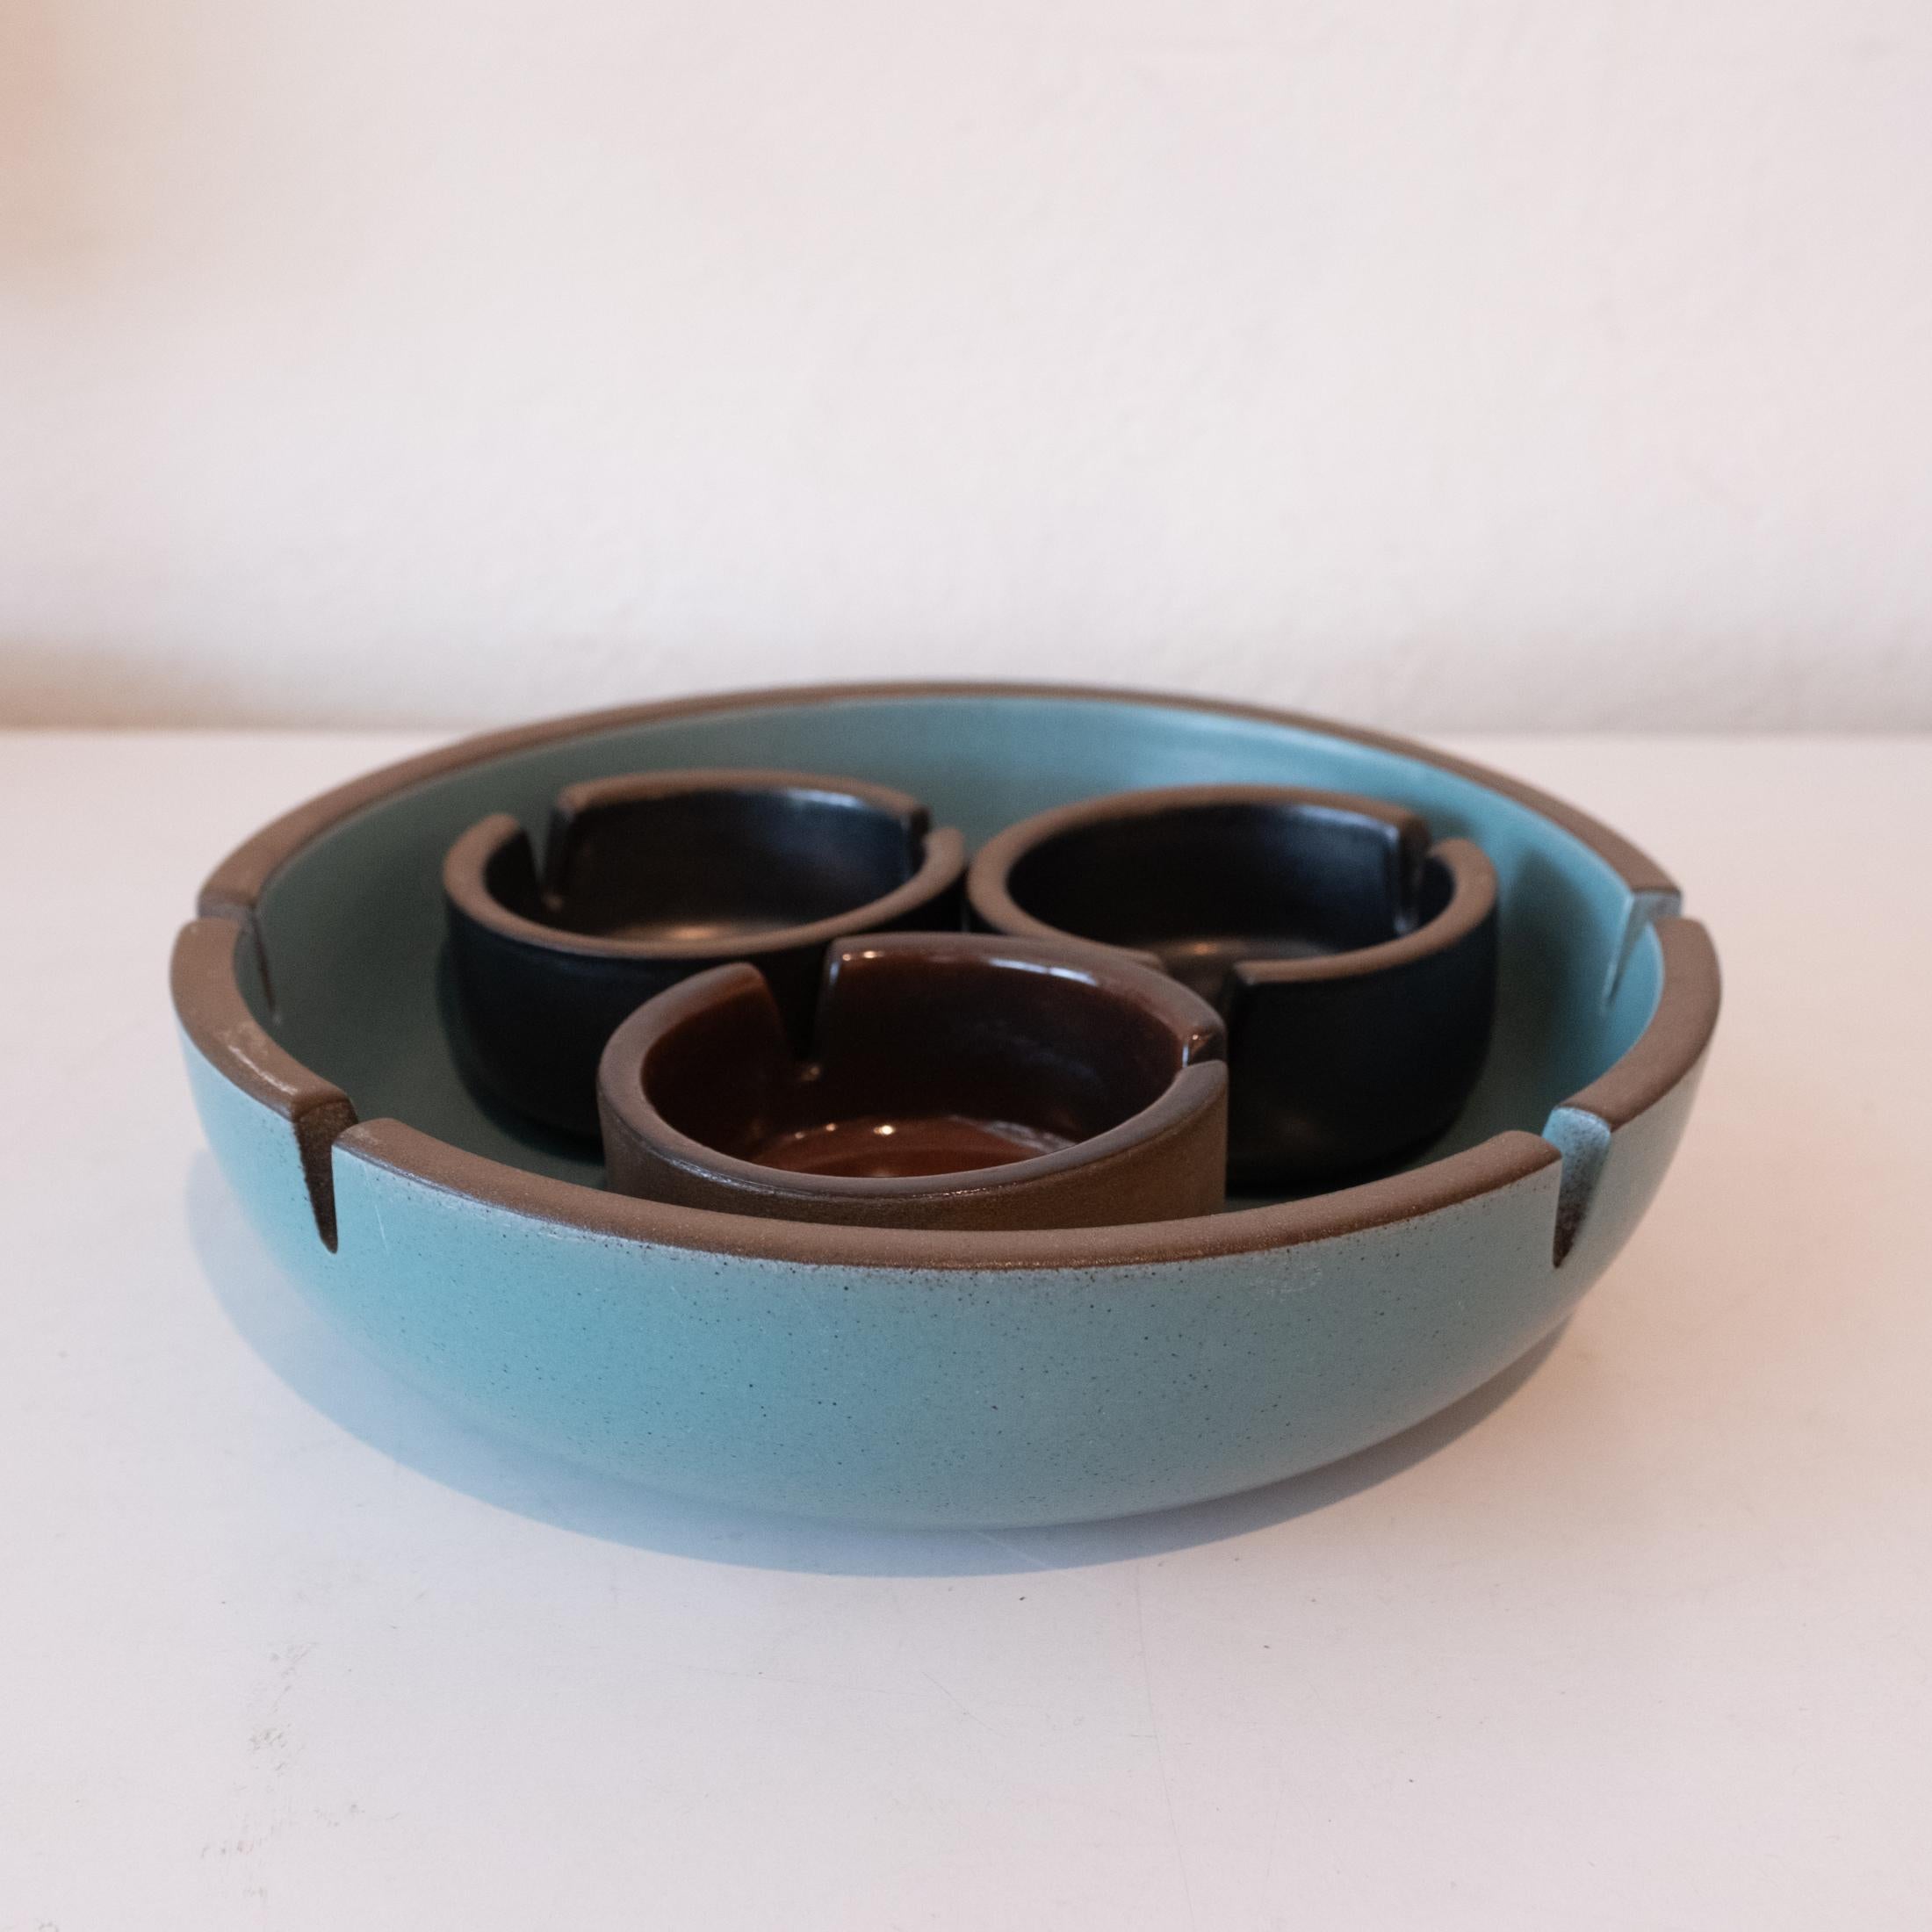 Un ensemble de quatre cendriers conçus par Edith Heath pour sa société, Heath Ceramics. Un design classique réalisé par un céramiste d'avant-garde. Fabriqué en Californie dans les années 1950. 

Grand : 8.5